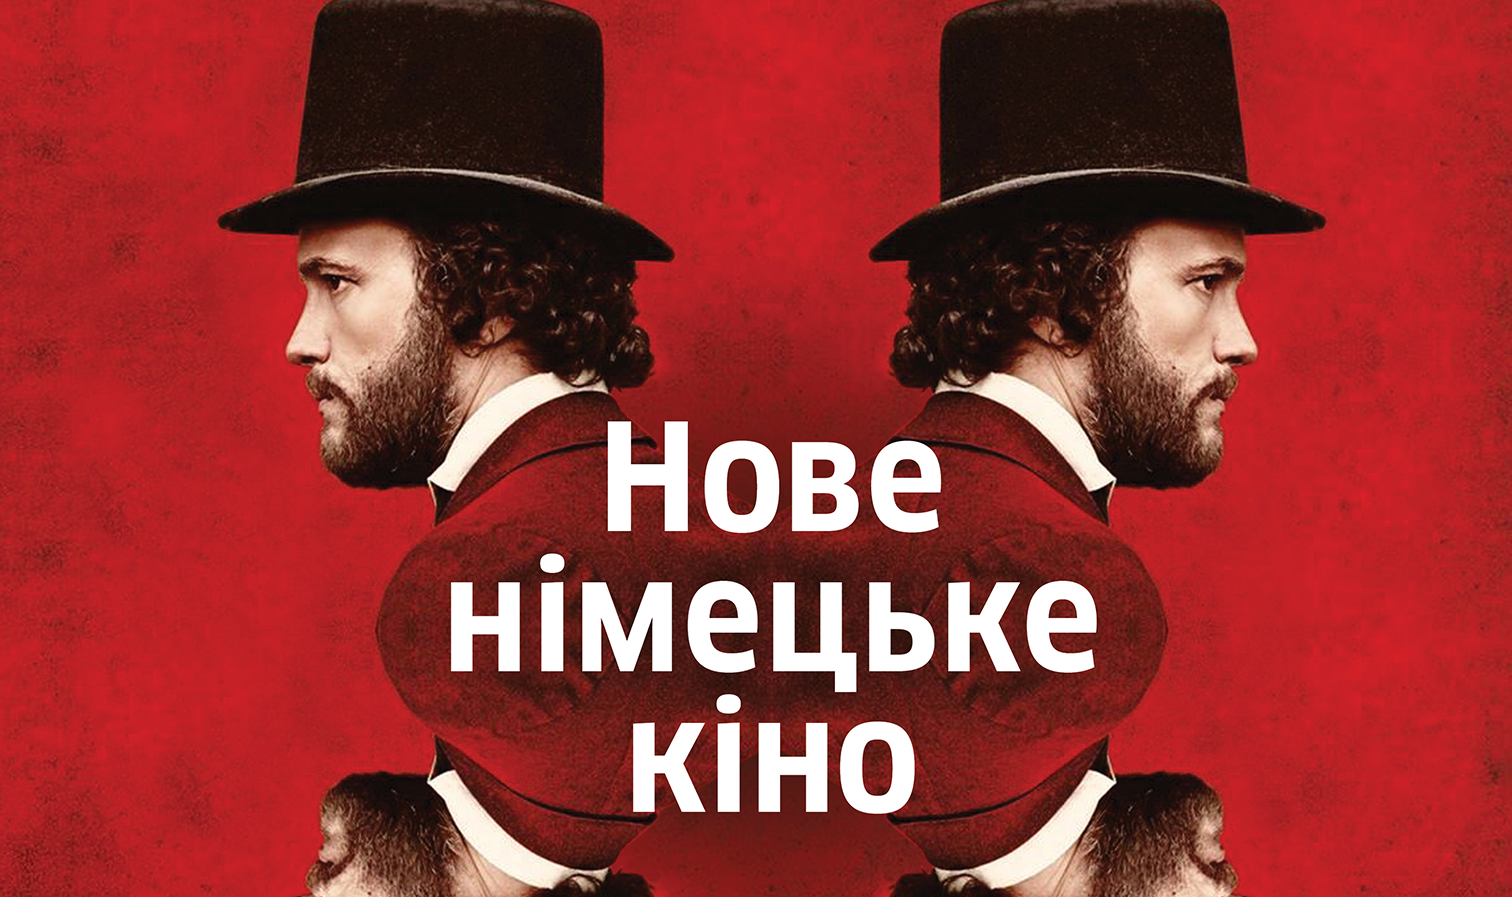 фрагмент постера фестиваля «Новое немецкое кино 2018»